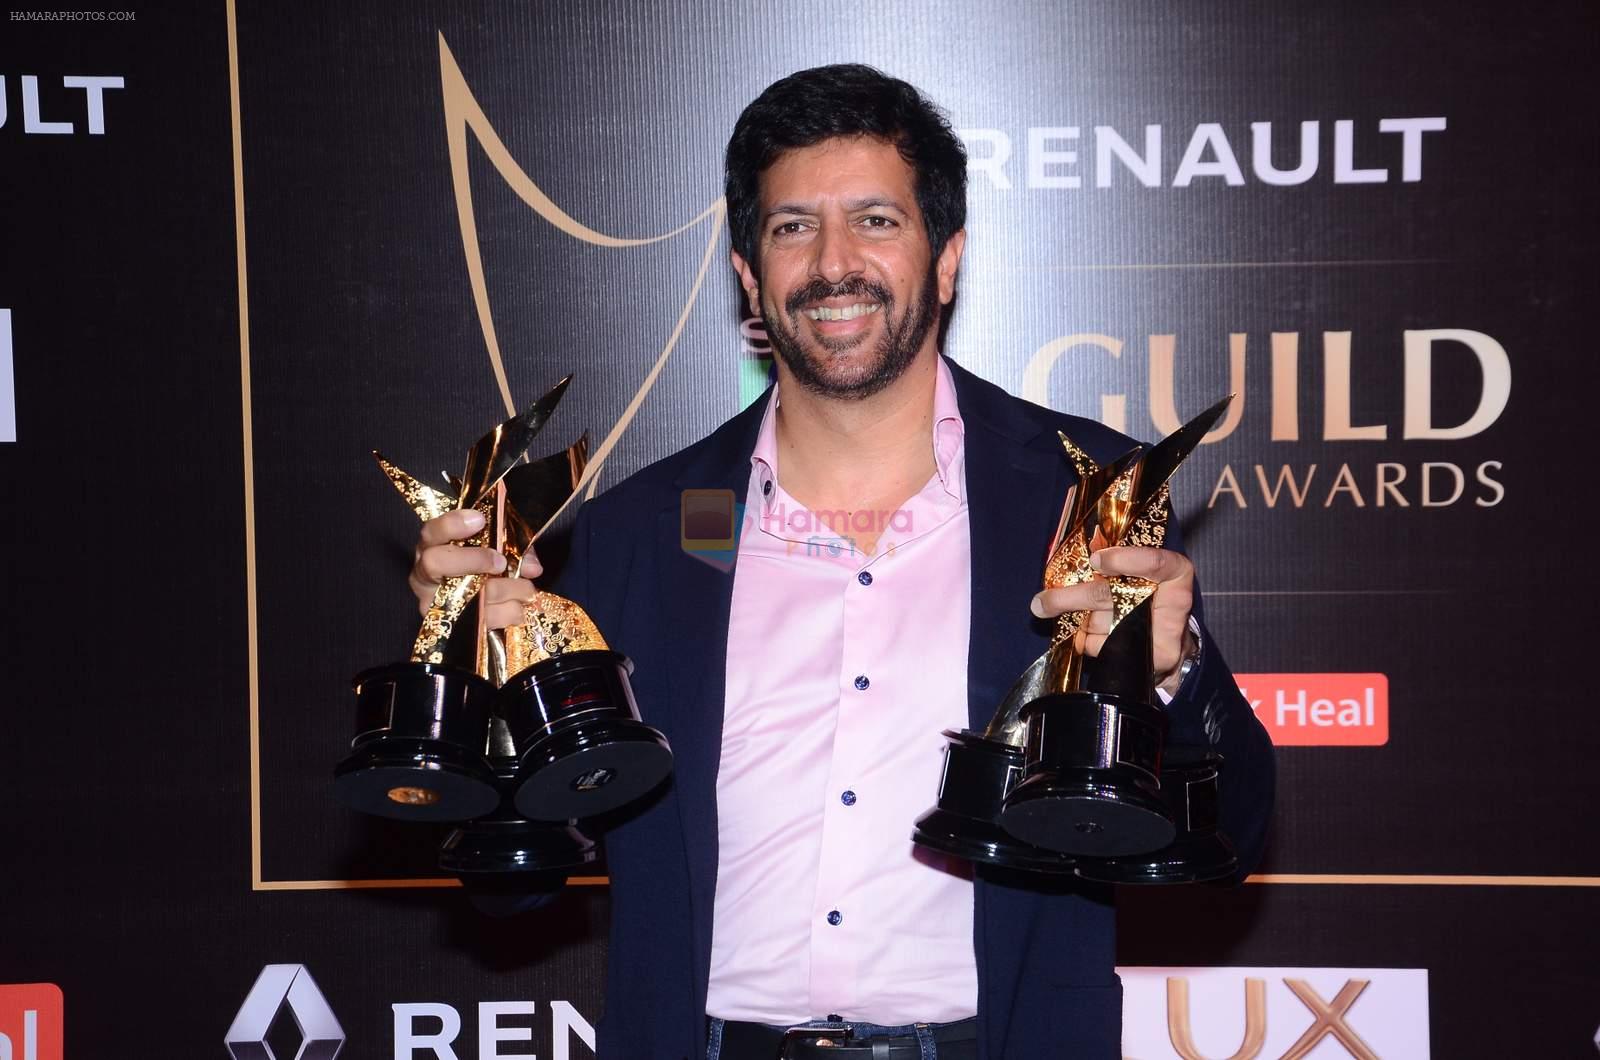 Kabir Khan at Producer's Guild Awards on 22nd Dec 2015